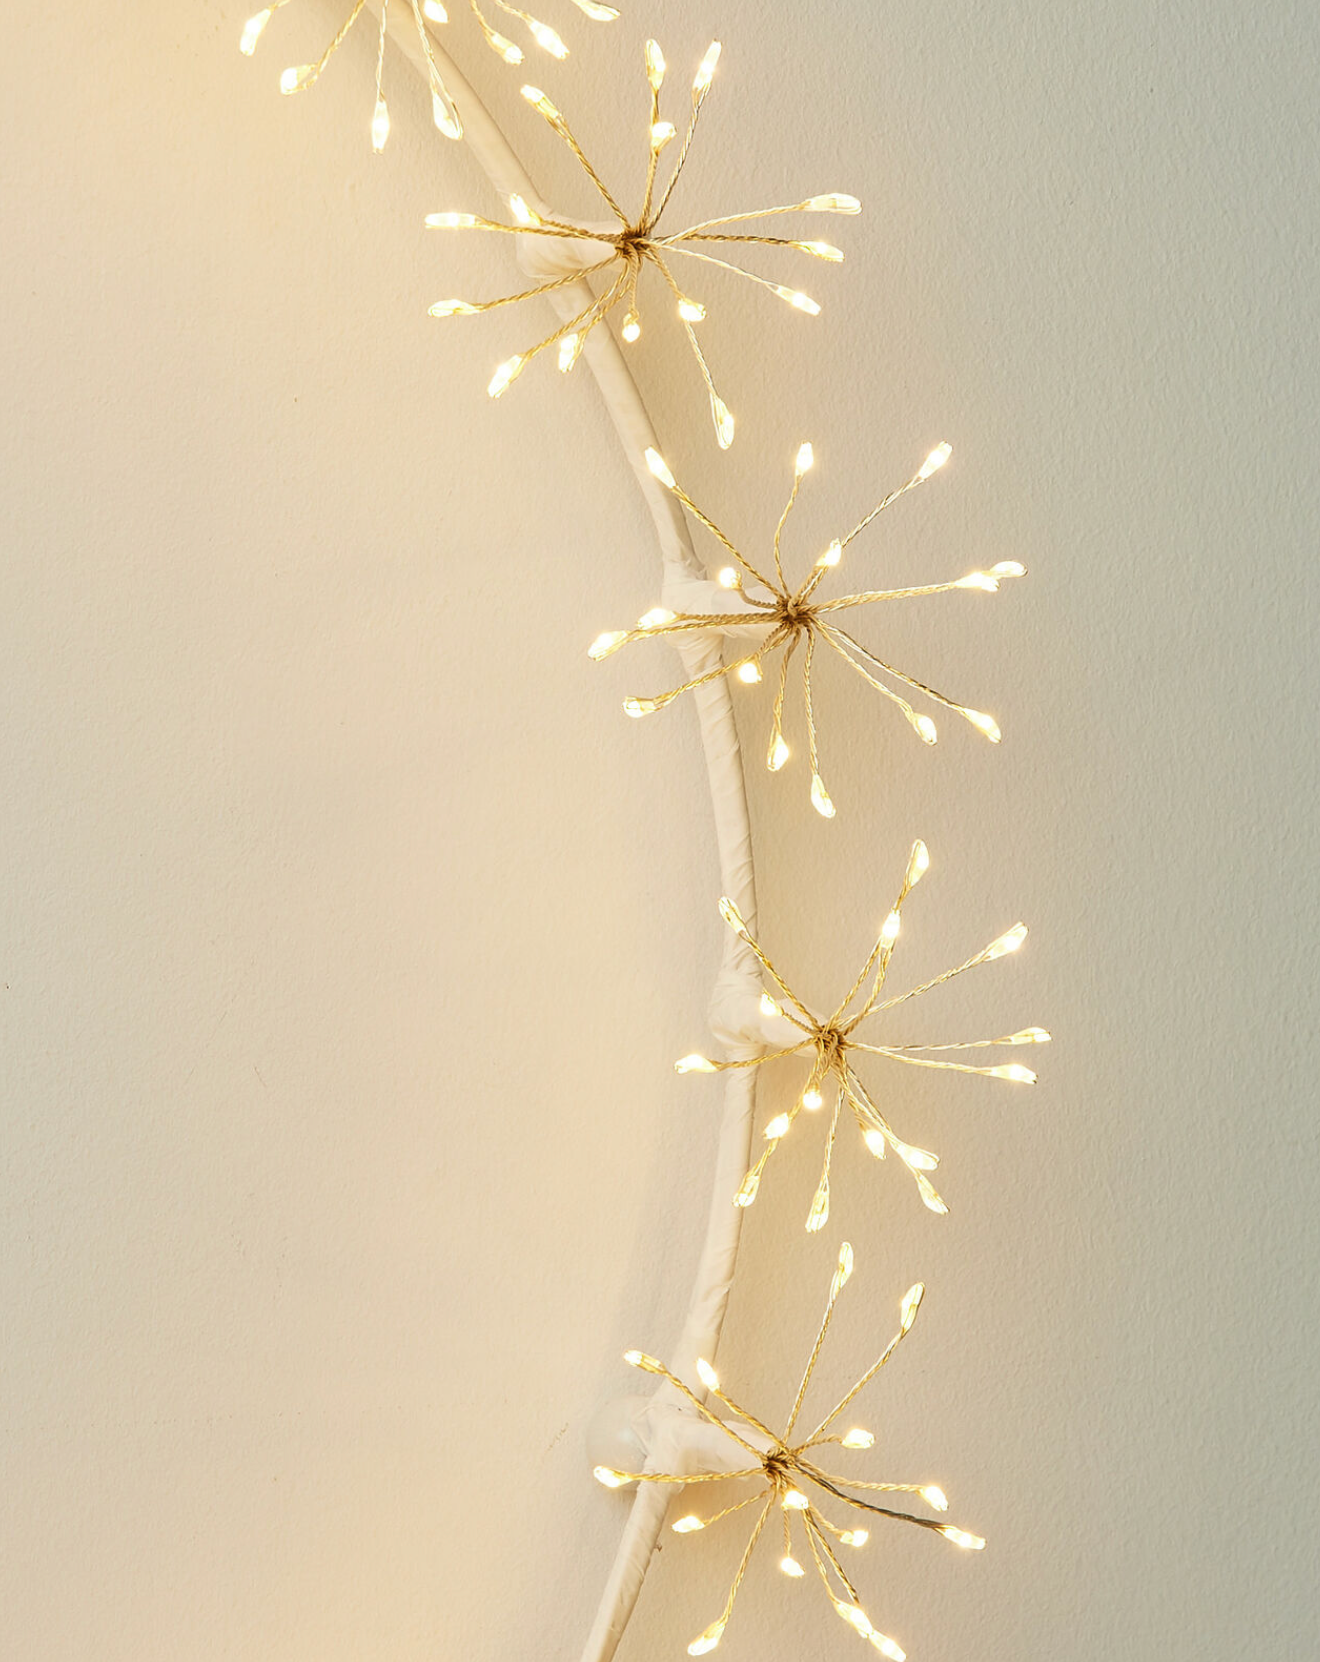 Starburst LED Wreath White